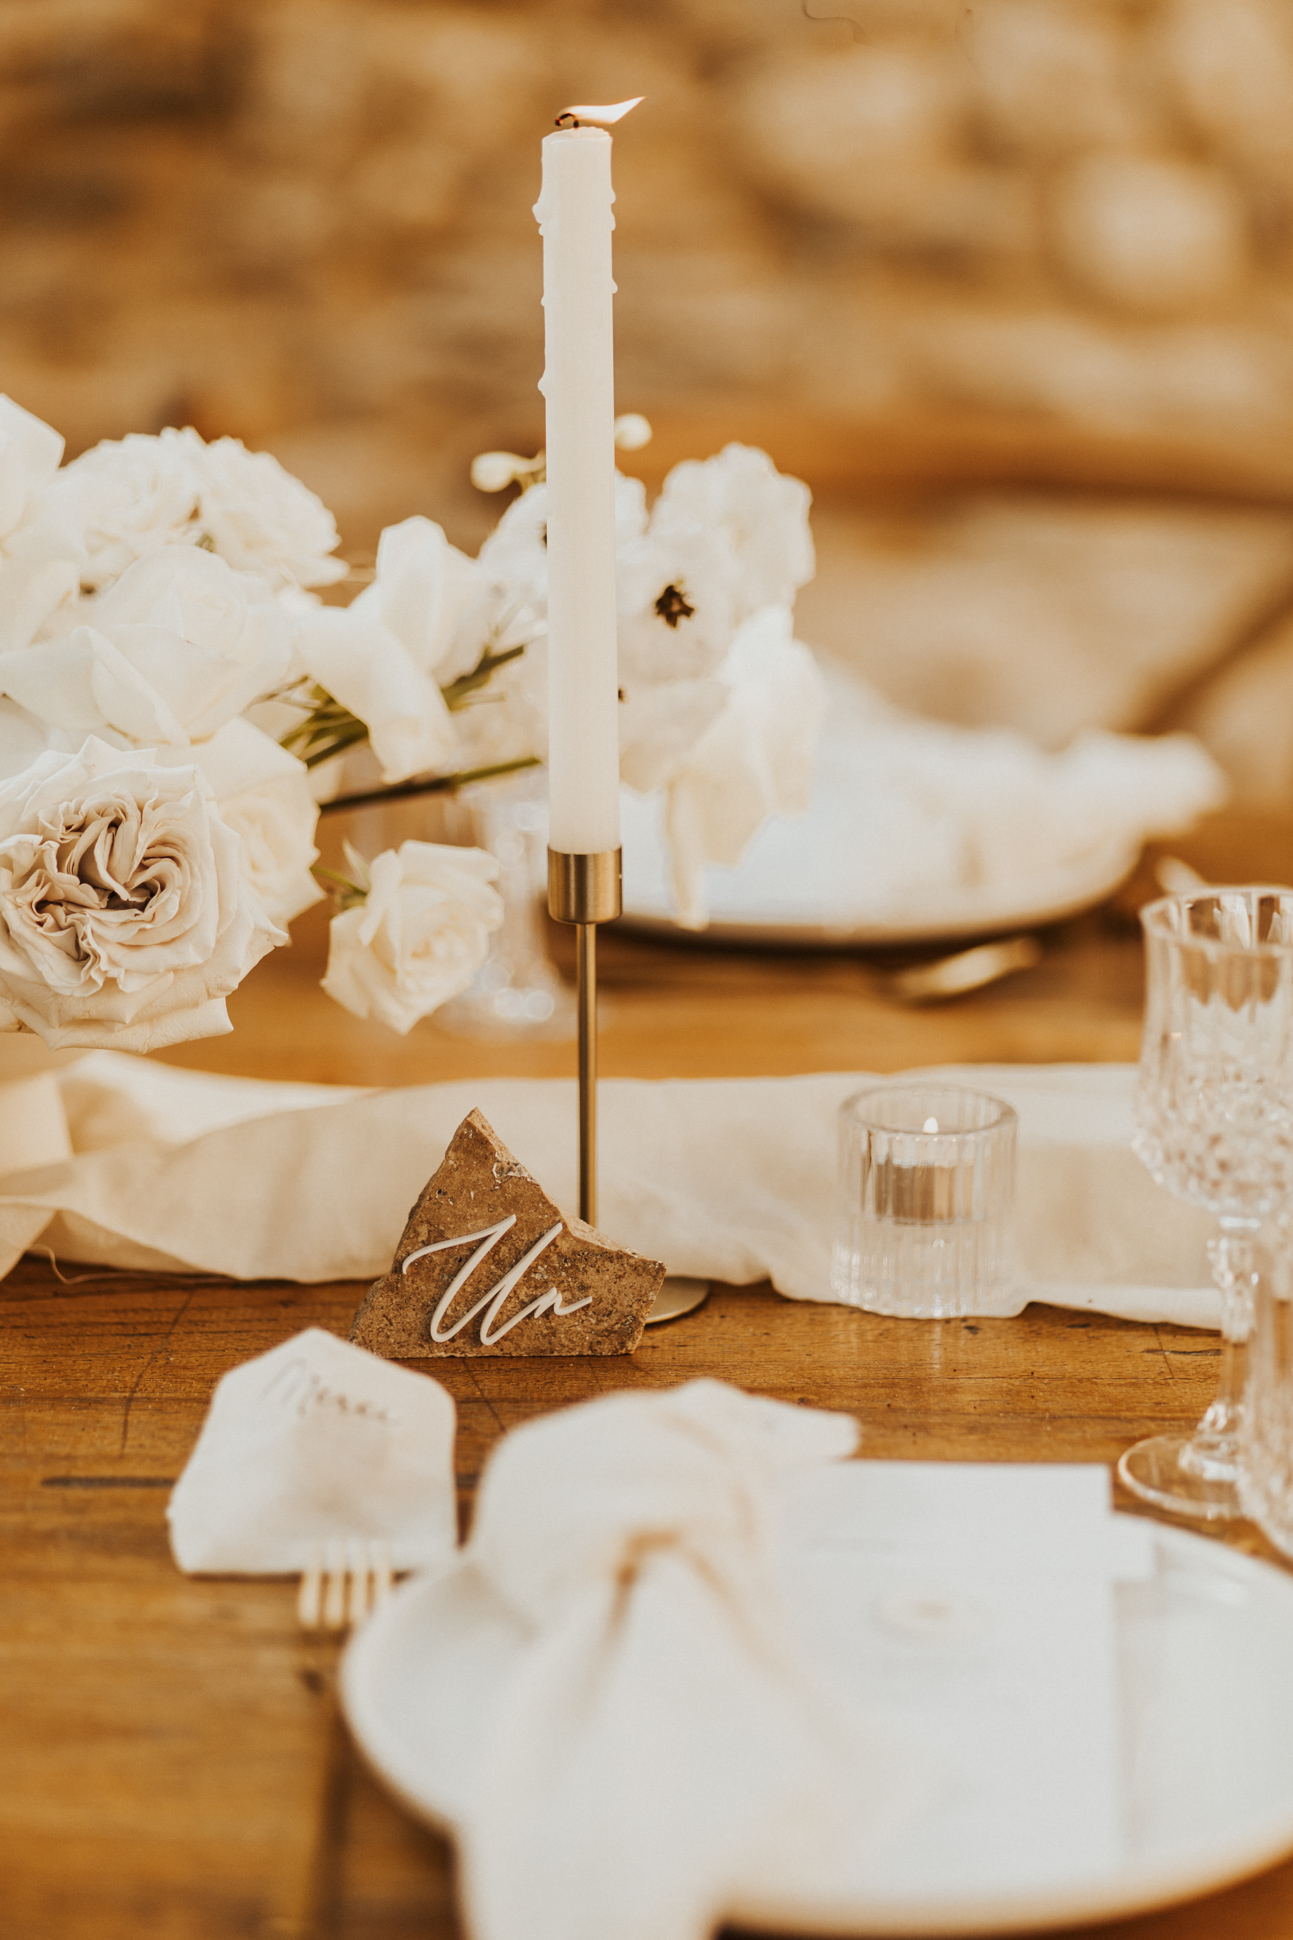 centre de table numero de table travertindecoration mariage elegant petit roulet en provence